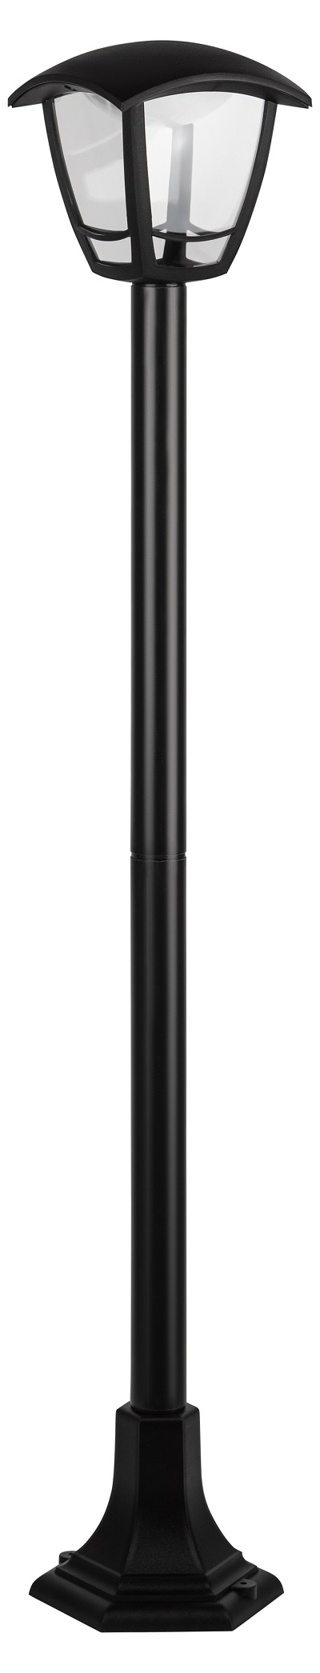 Садово-парковый светильник ЭРА ДТУ 07-8-002 У1 «Валенсия 4» черный 8Вт 6500K светодиодный напольный IP54 4 гранный